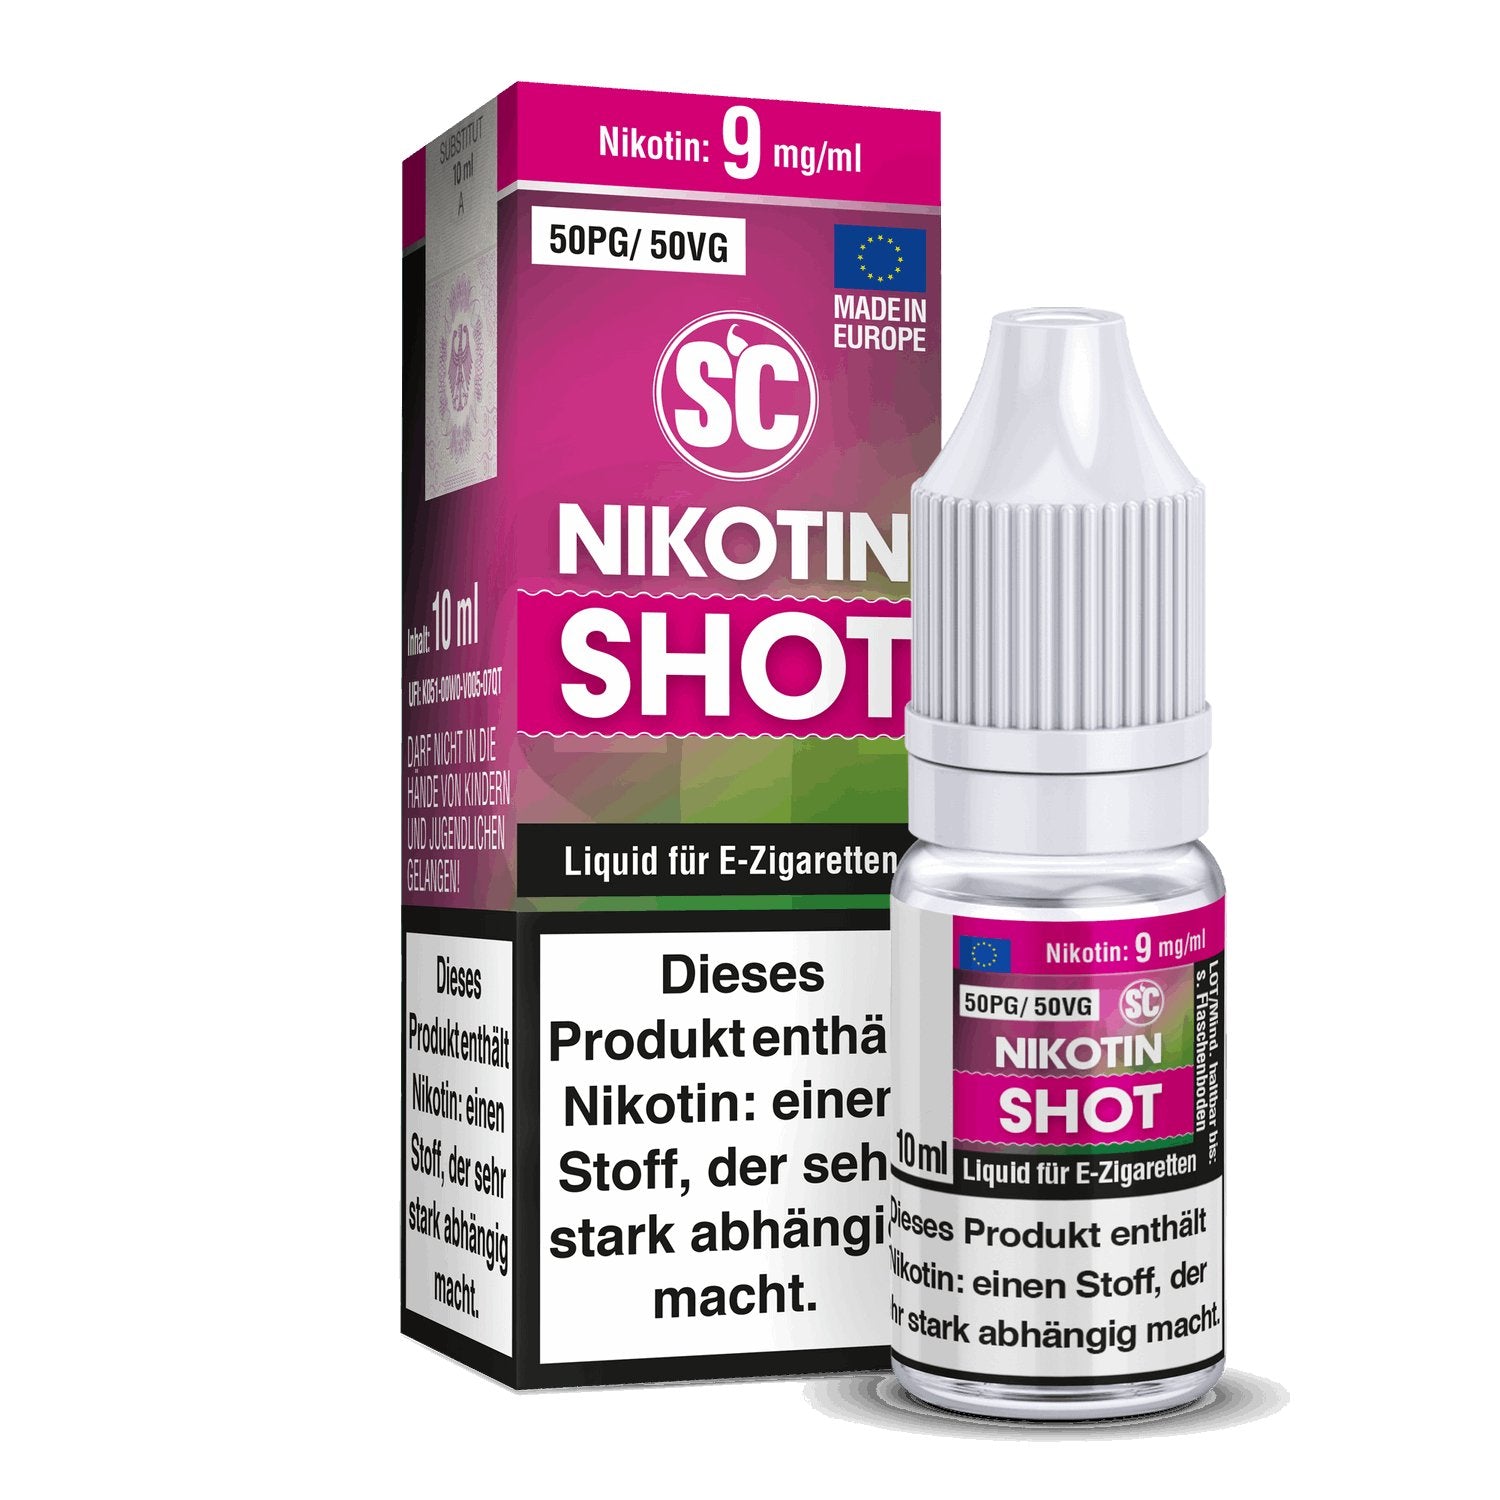 SC - Nikotin Shot - 10ml (50PG/50VG) - 50PG / 50VG 1er Packung 9 mg/ml- Vapes4you